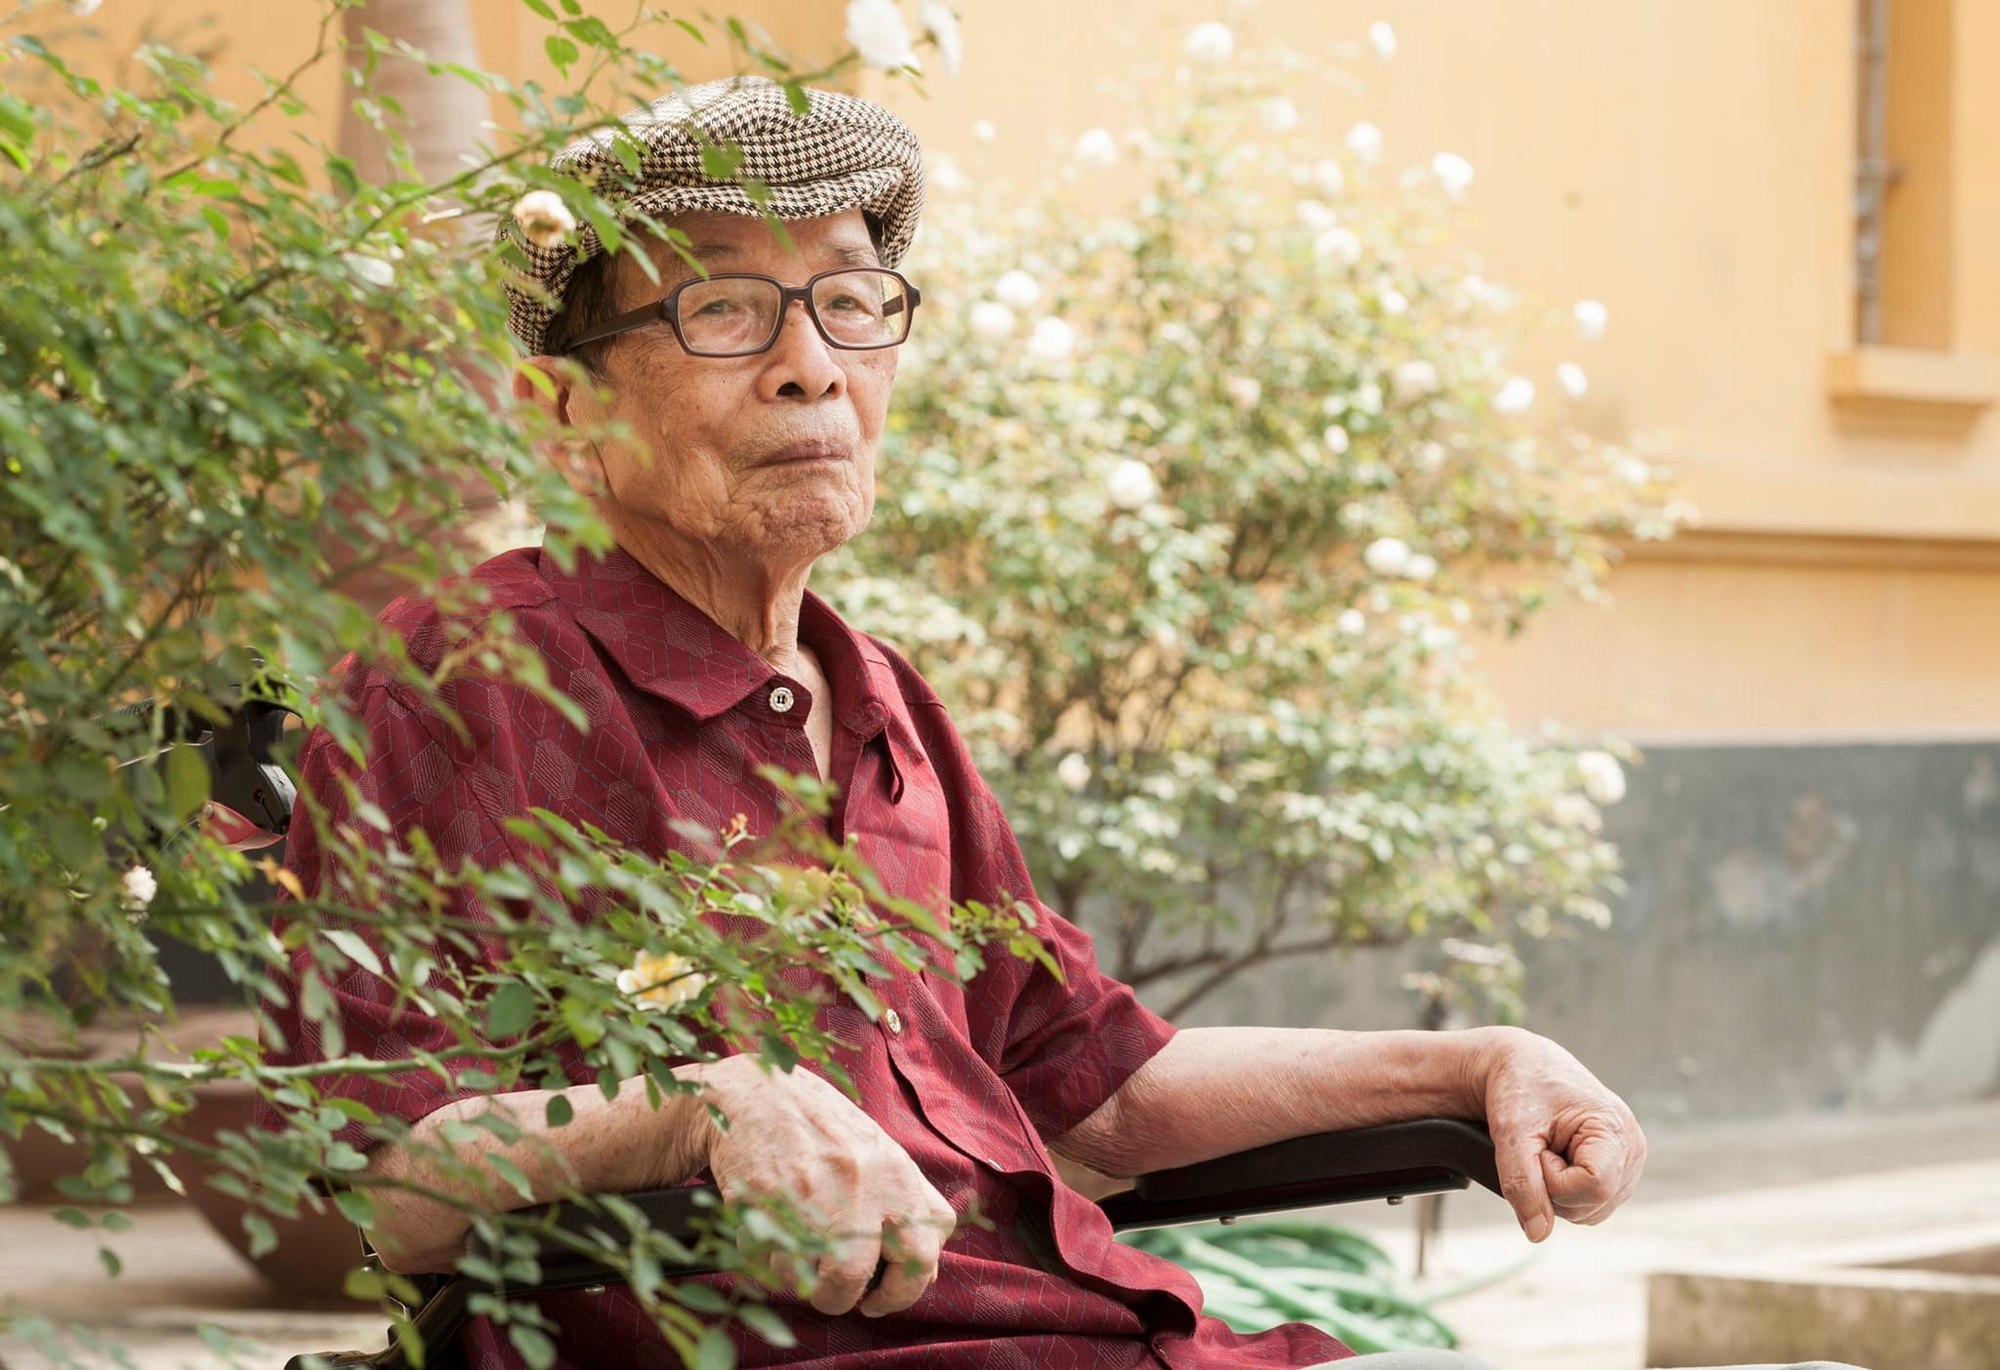 Nhà văn Lê Phương – tác giả kịch bản phim “Biệt động Sài Gòn” qua đời